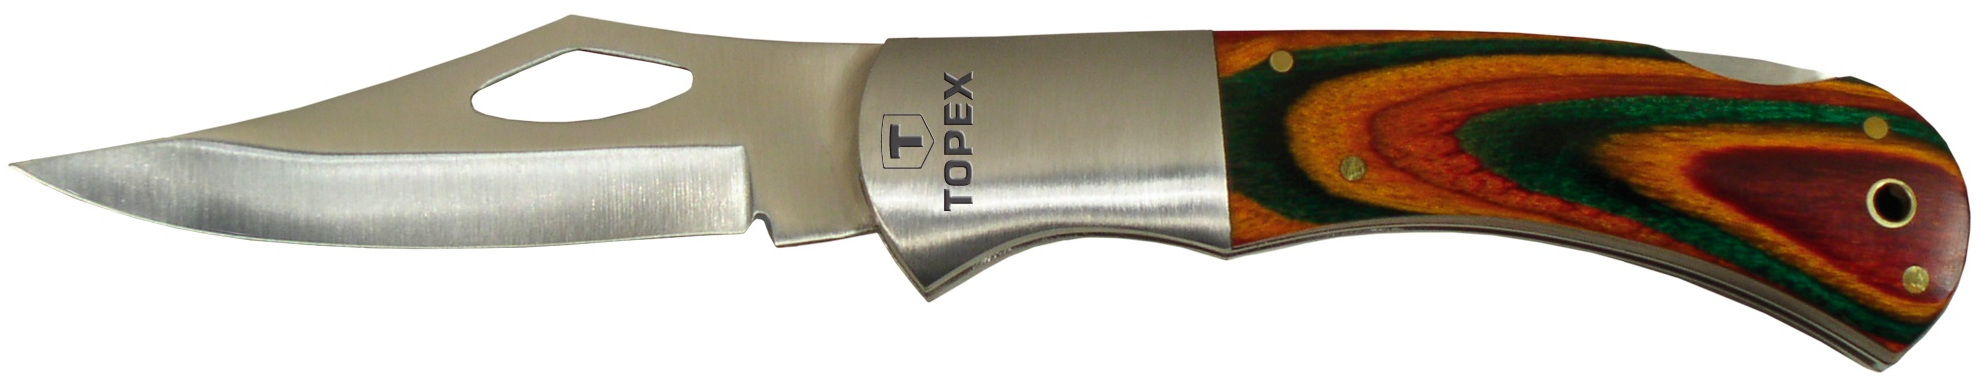 Отзывы складной нож Topex 98Z017 в Украине